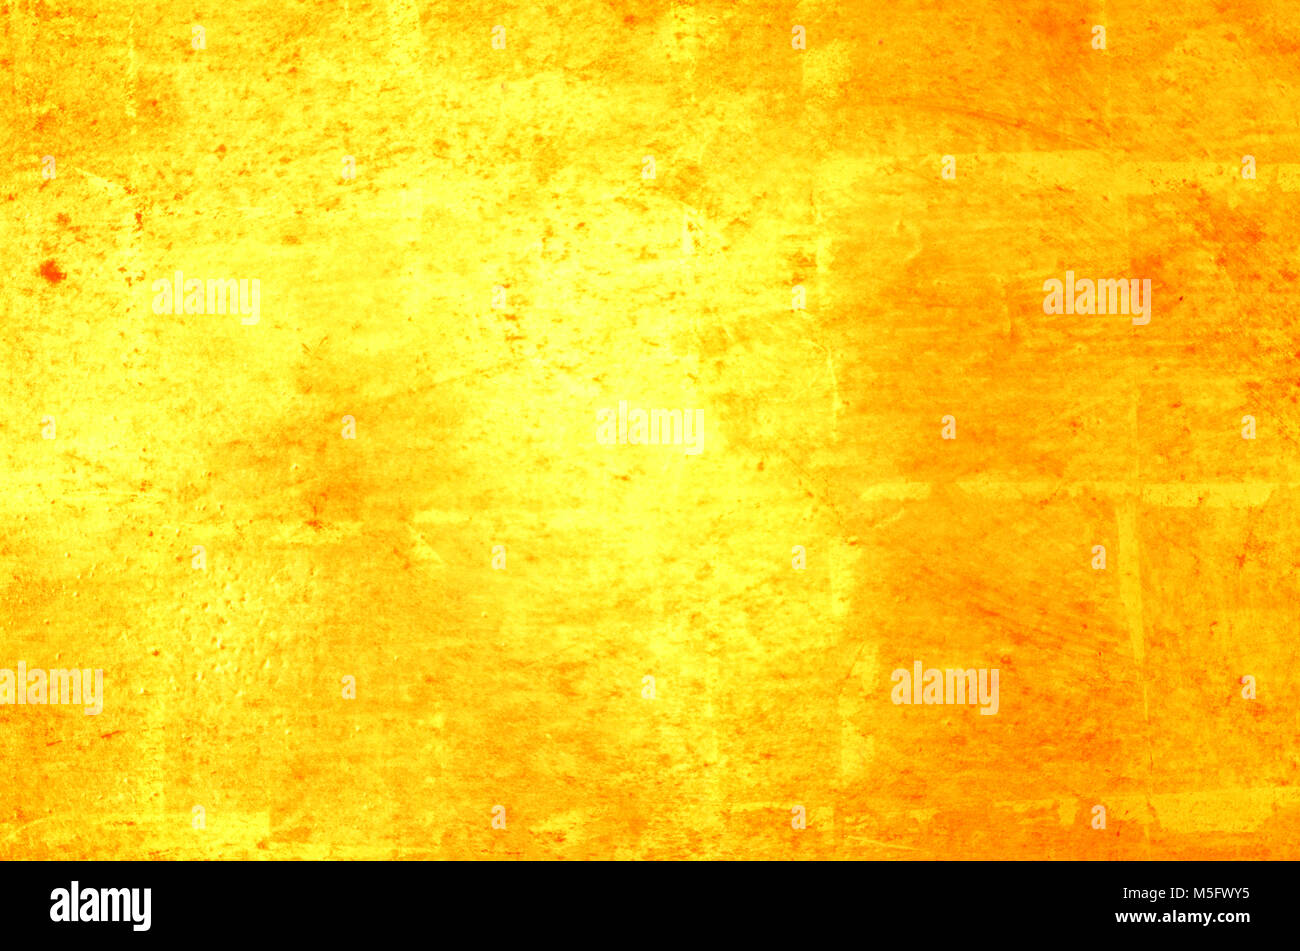 Blur abstract photo image de couleur or brillant reflètent la lumière d'une paroi métallique couleur or qui couvrent à la feuille d'aluminium pour vergolden un mur, pouvez utiliser Banque D'Images